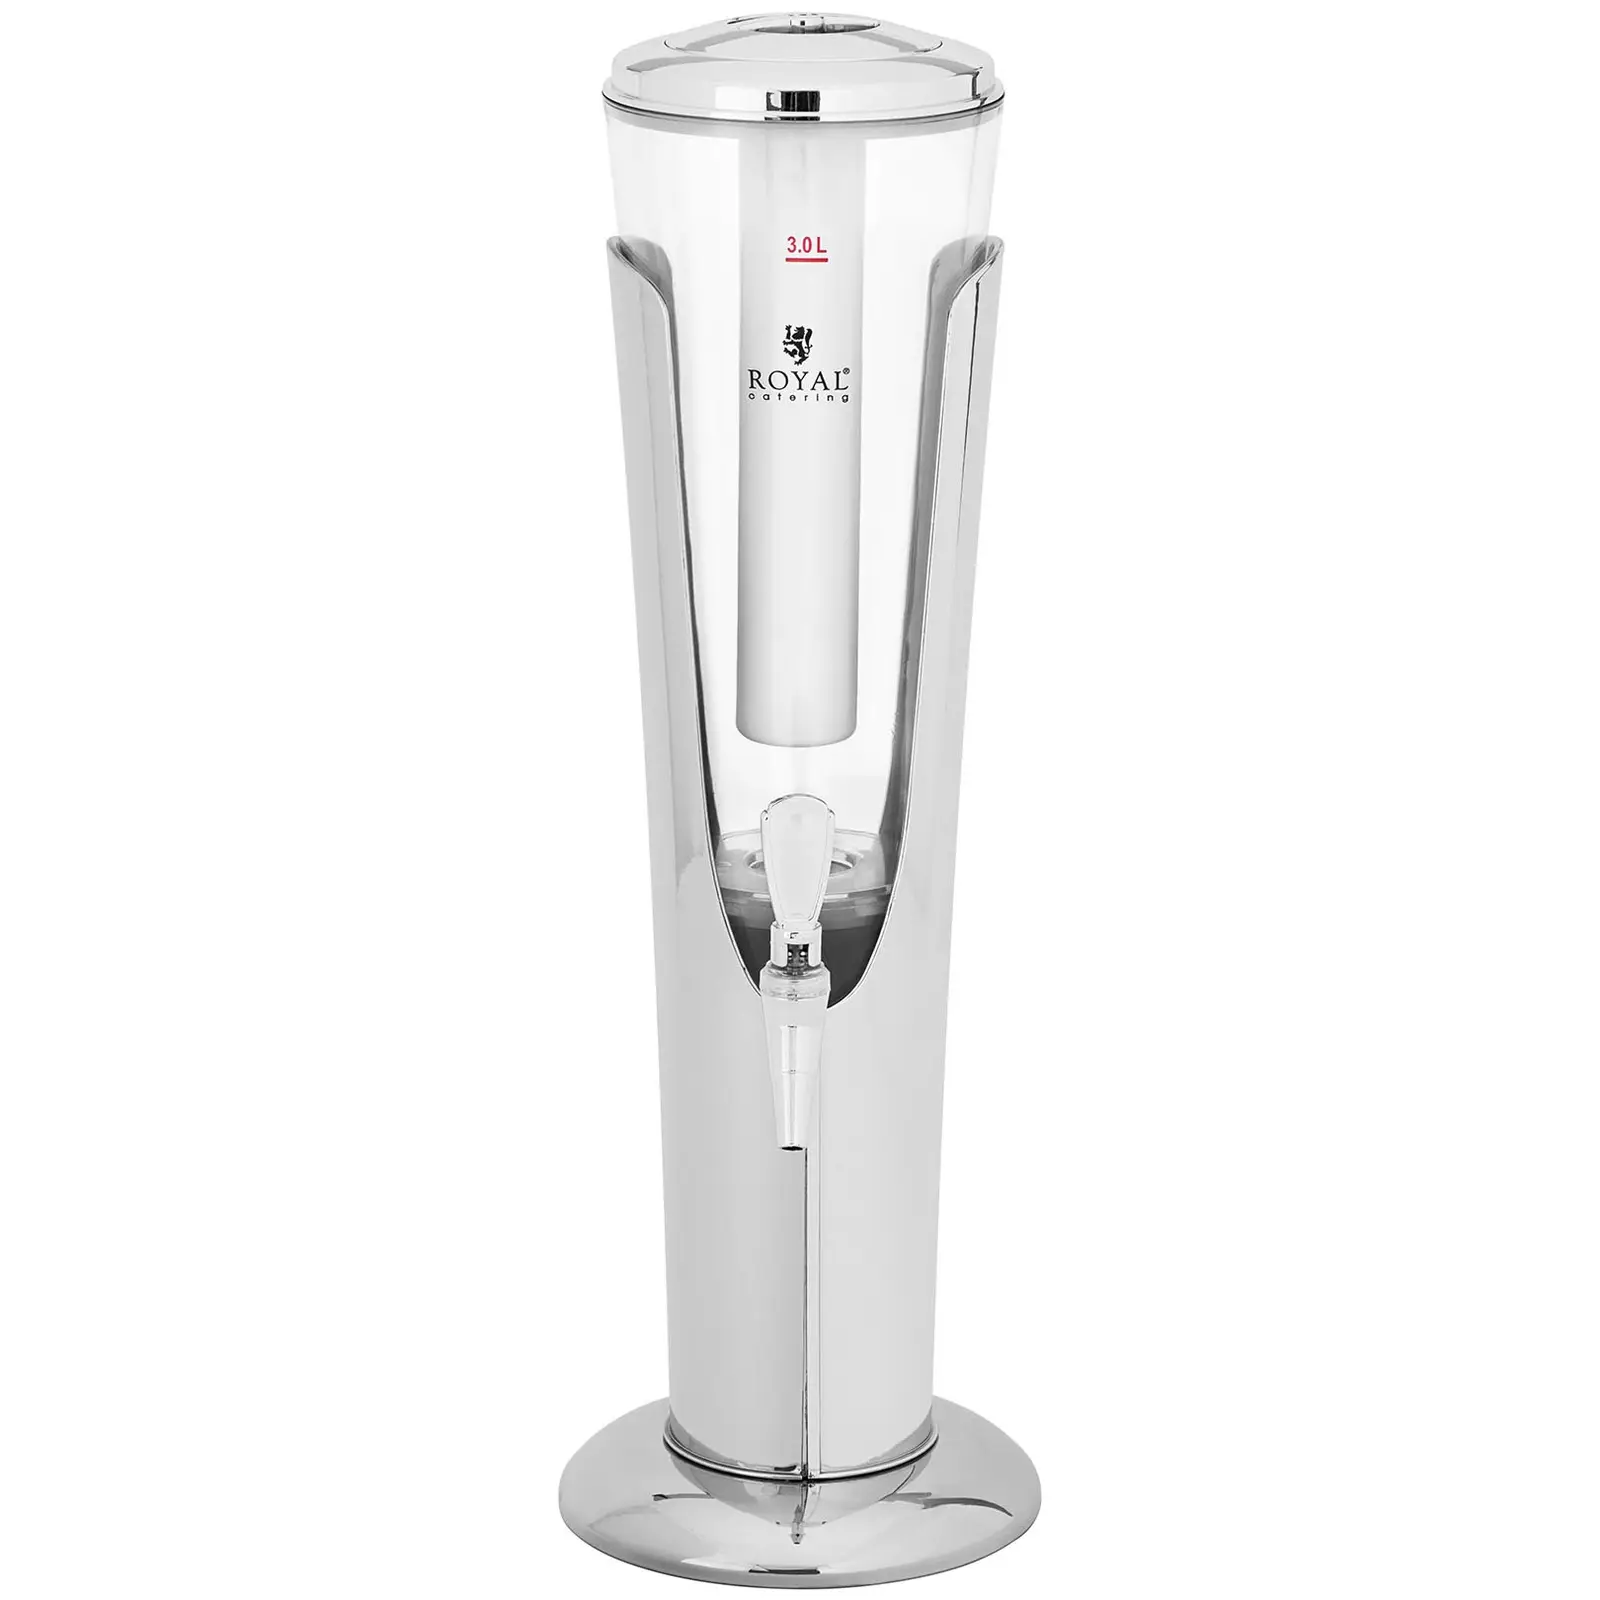 Dispensador de bebidas frías - 3 L - sistema de enfriamiento - para vasos hasta 198 mm - iluminación LED - plateado - Royal Catering